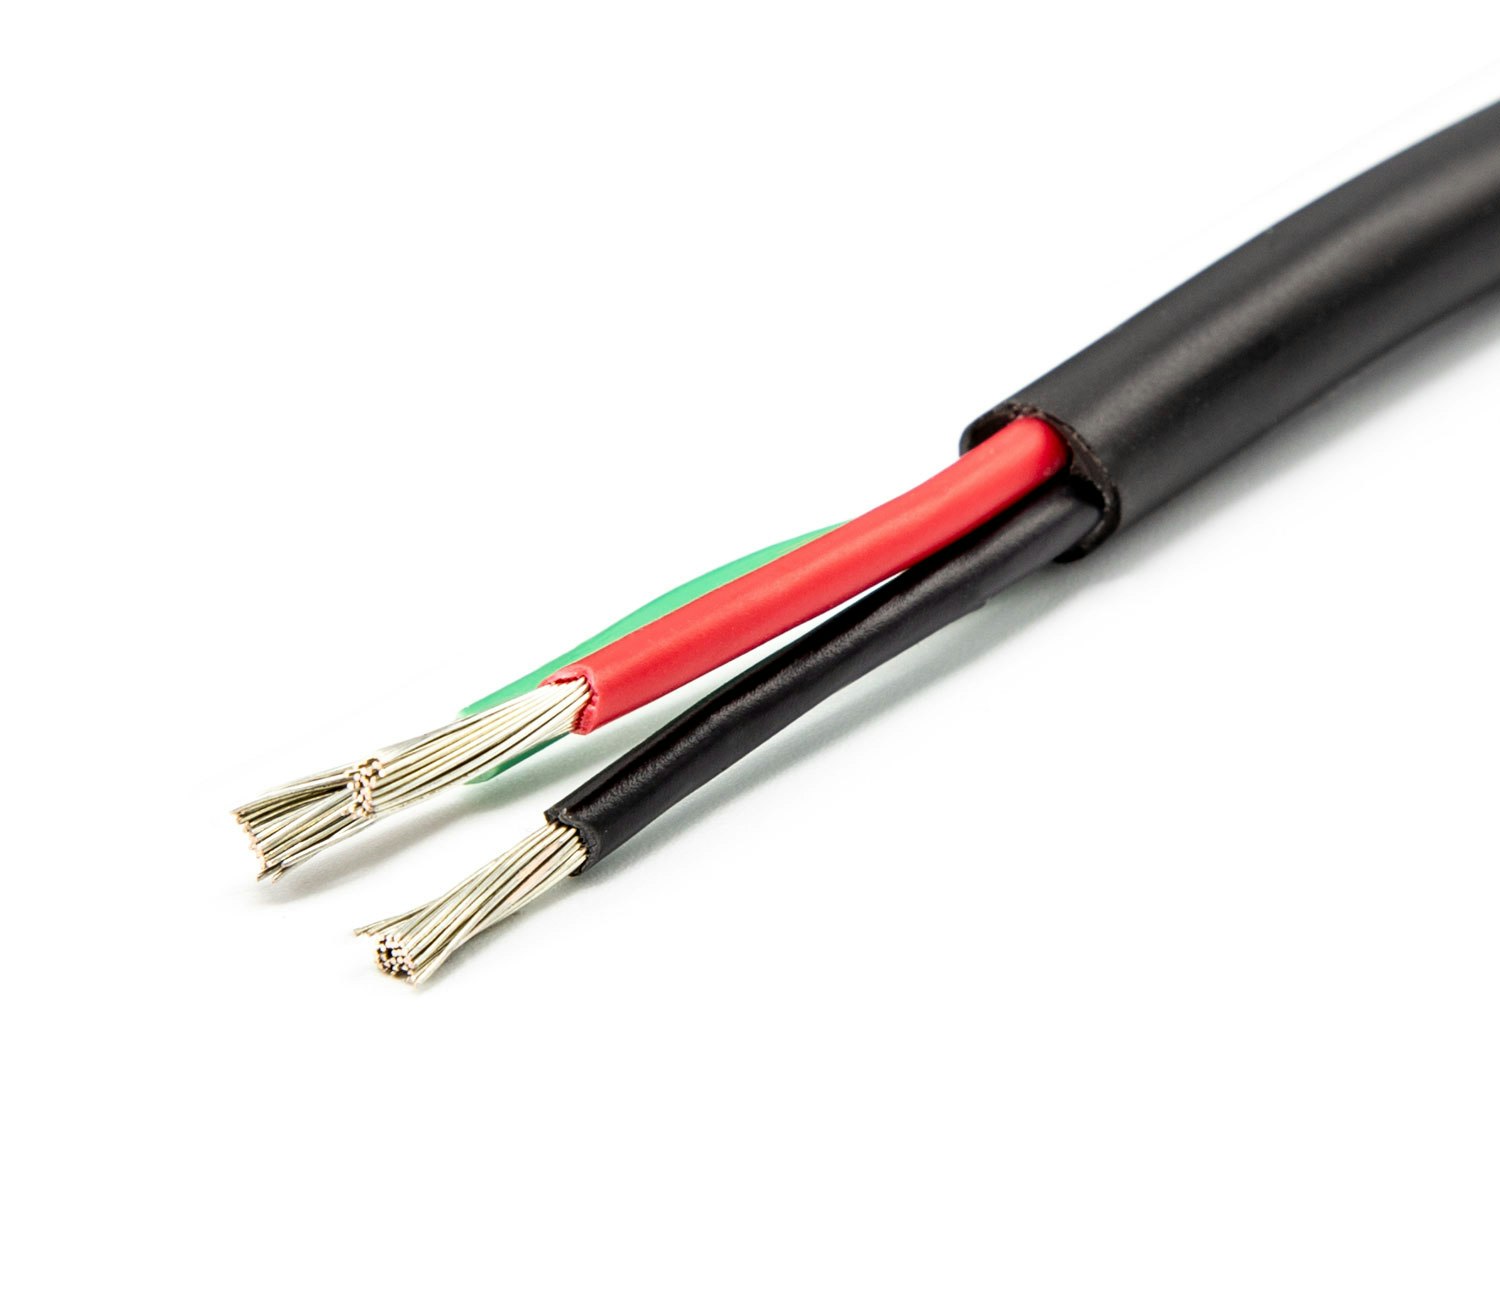  OCEANFLEX - Fortinnet elektrisk kabel multi-wire 3x1,5mm2 rund, 30m